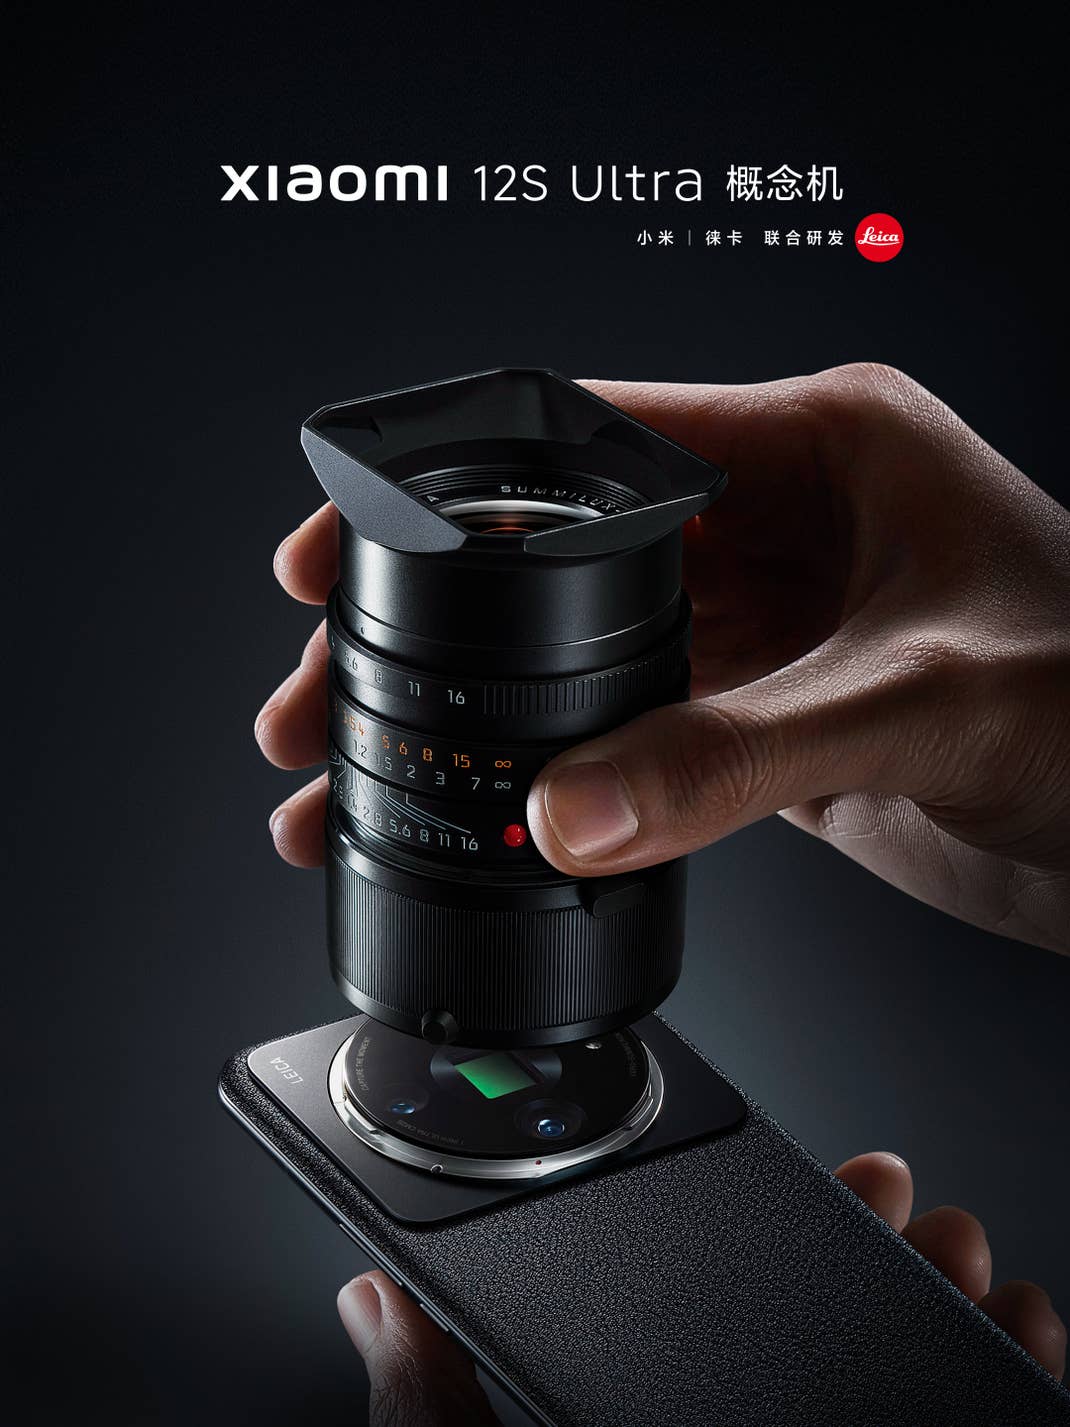 Xiaomi 12S Ultra Konzept-Smartphone